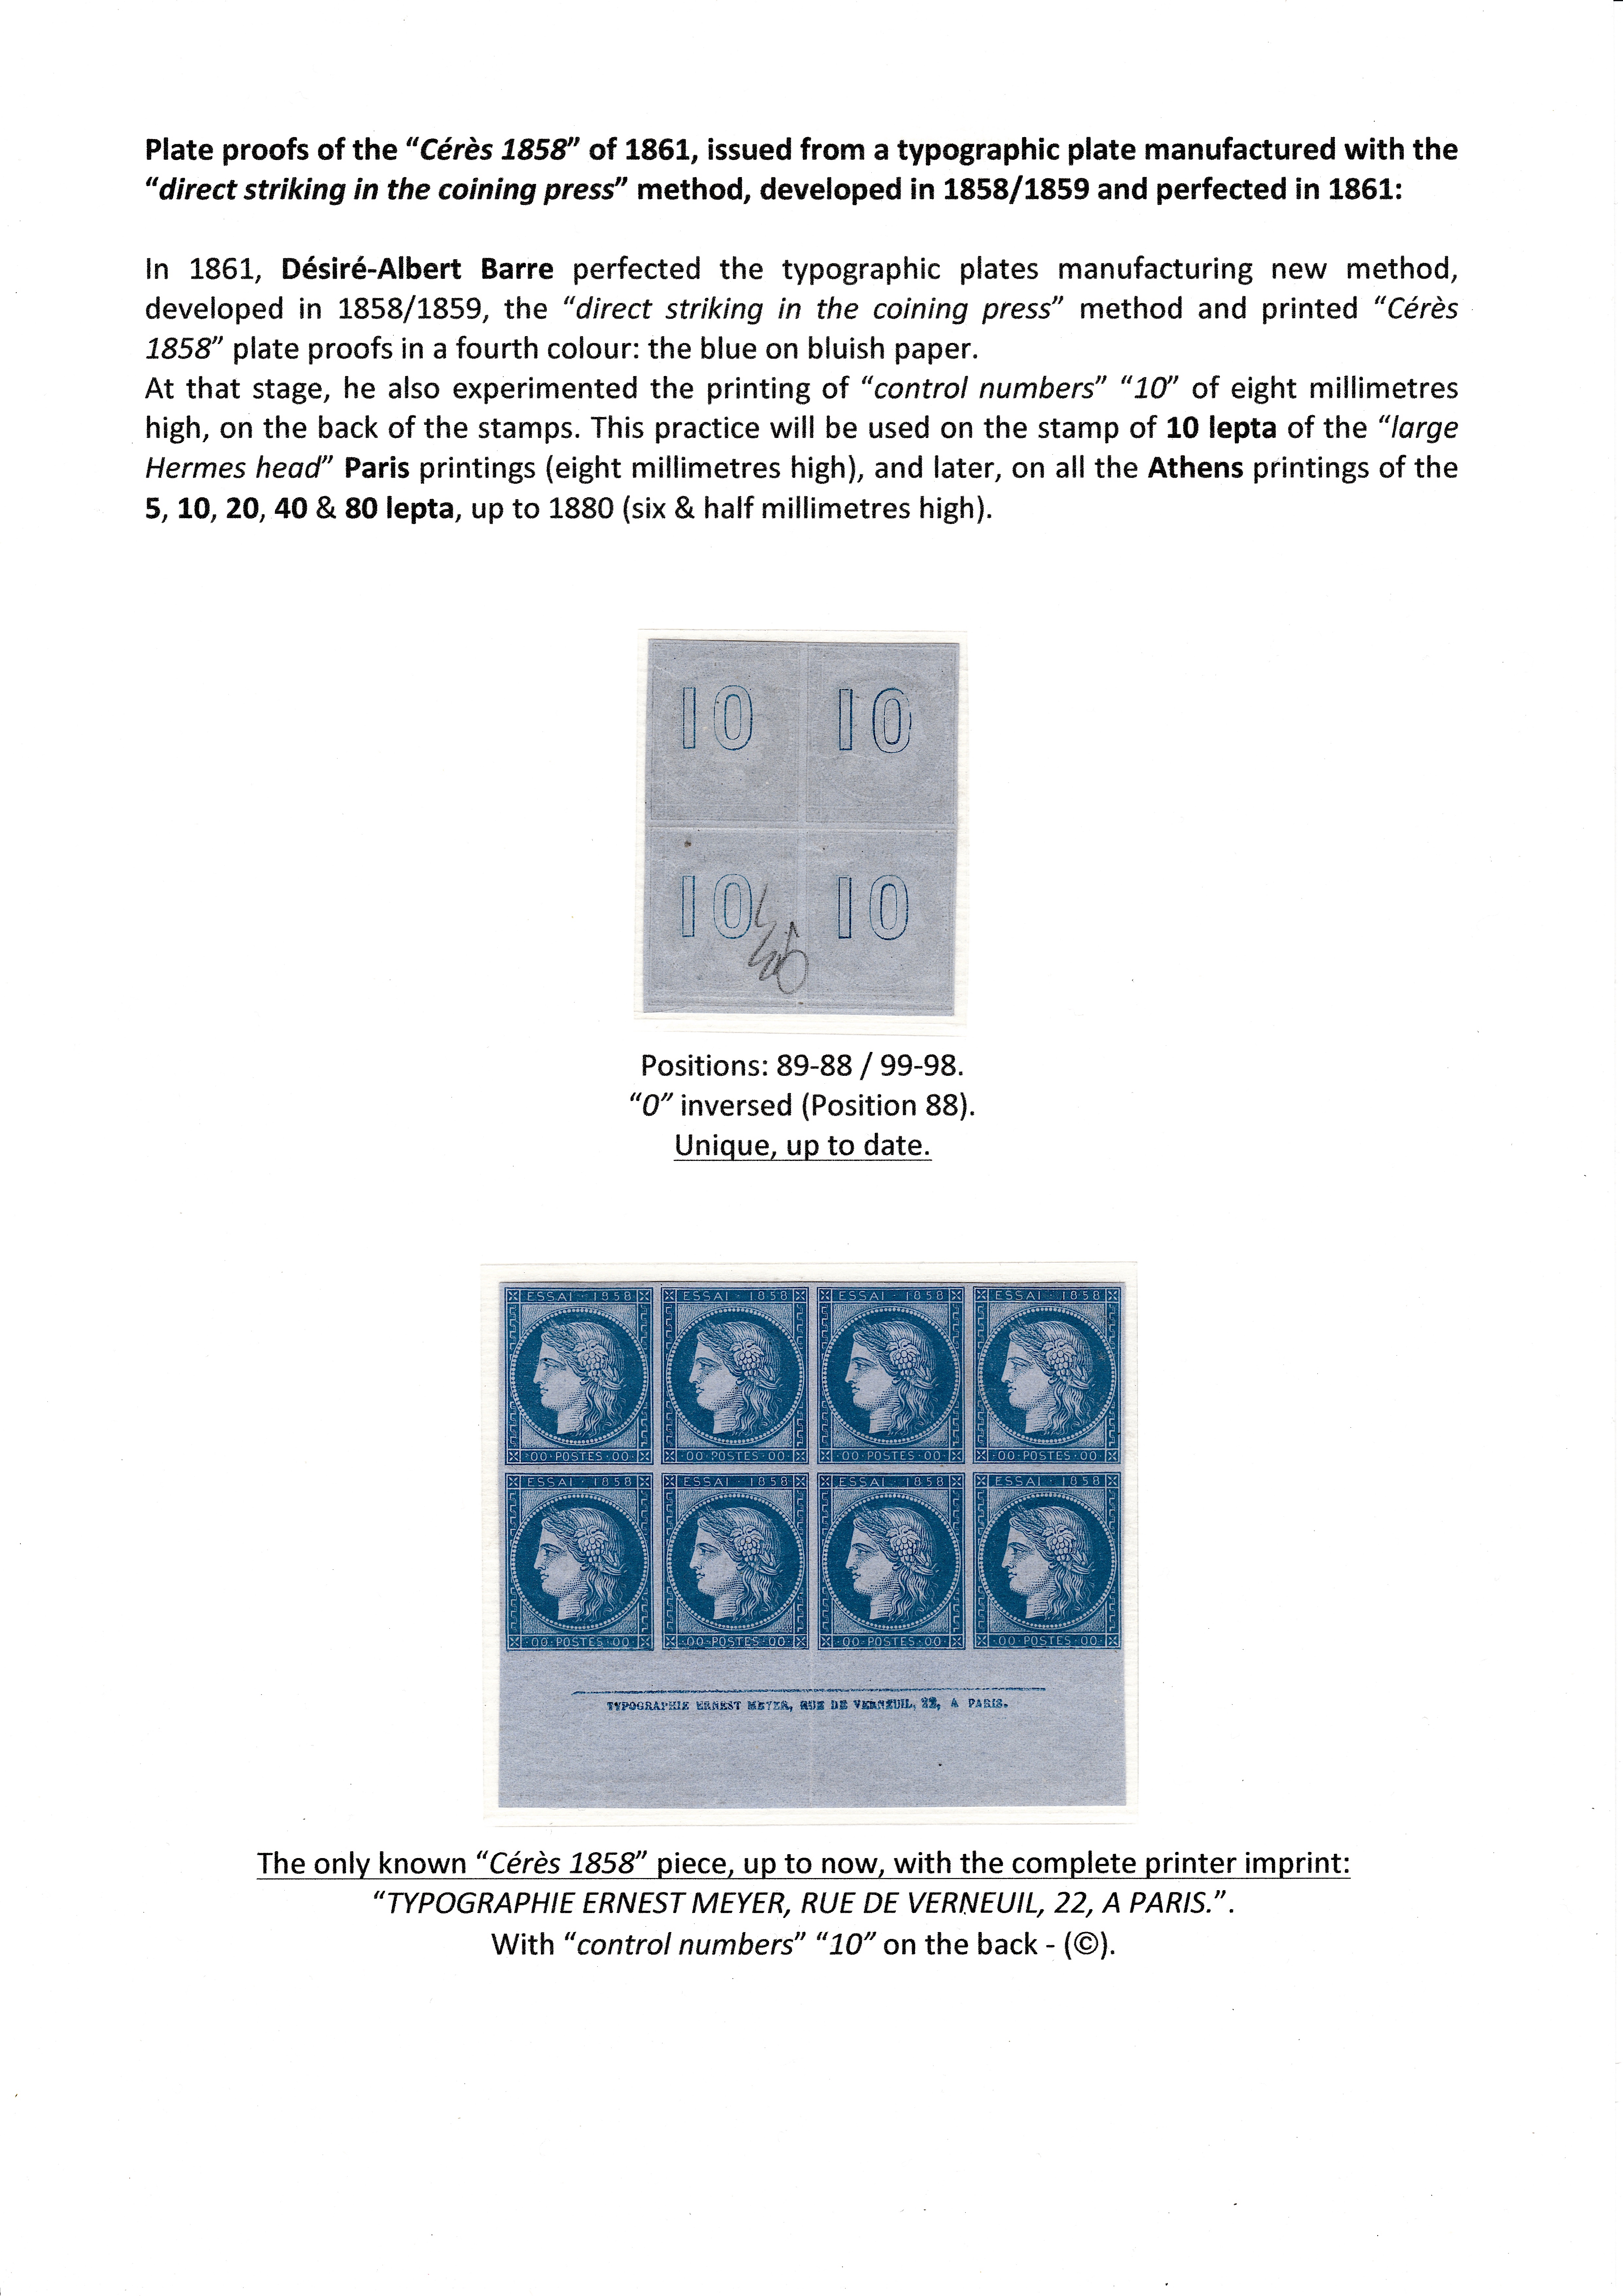 La fabrication et l���utilisation postale des tirages de Paris de la grosse t��te d���Herm��s de Gr��ce��� p. 6